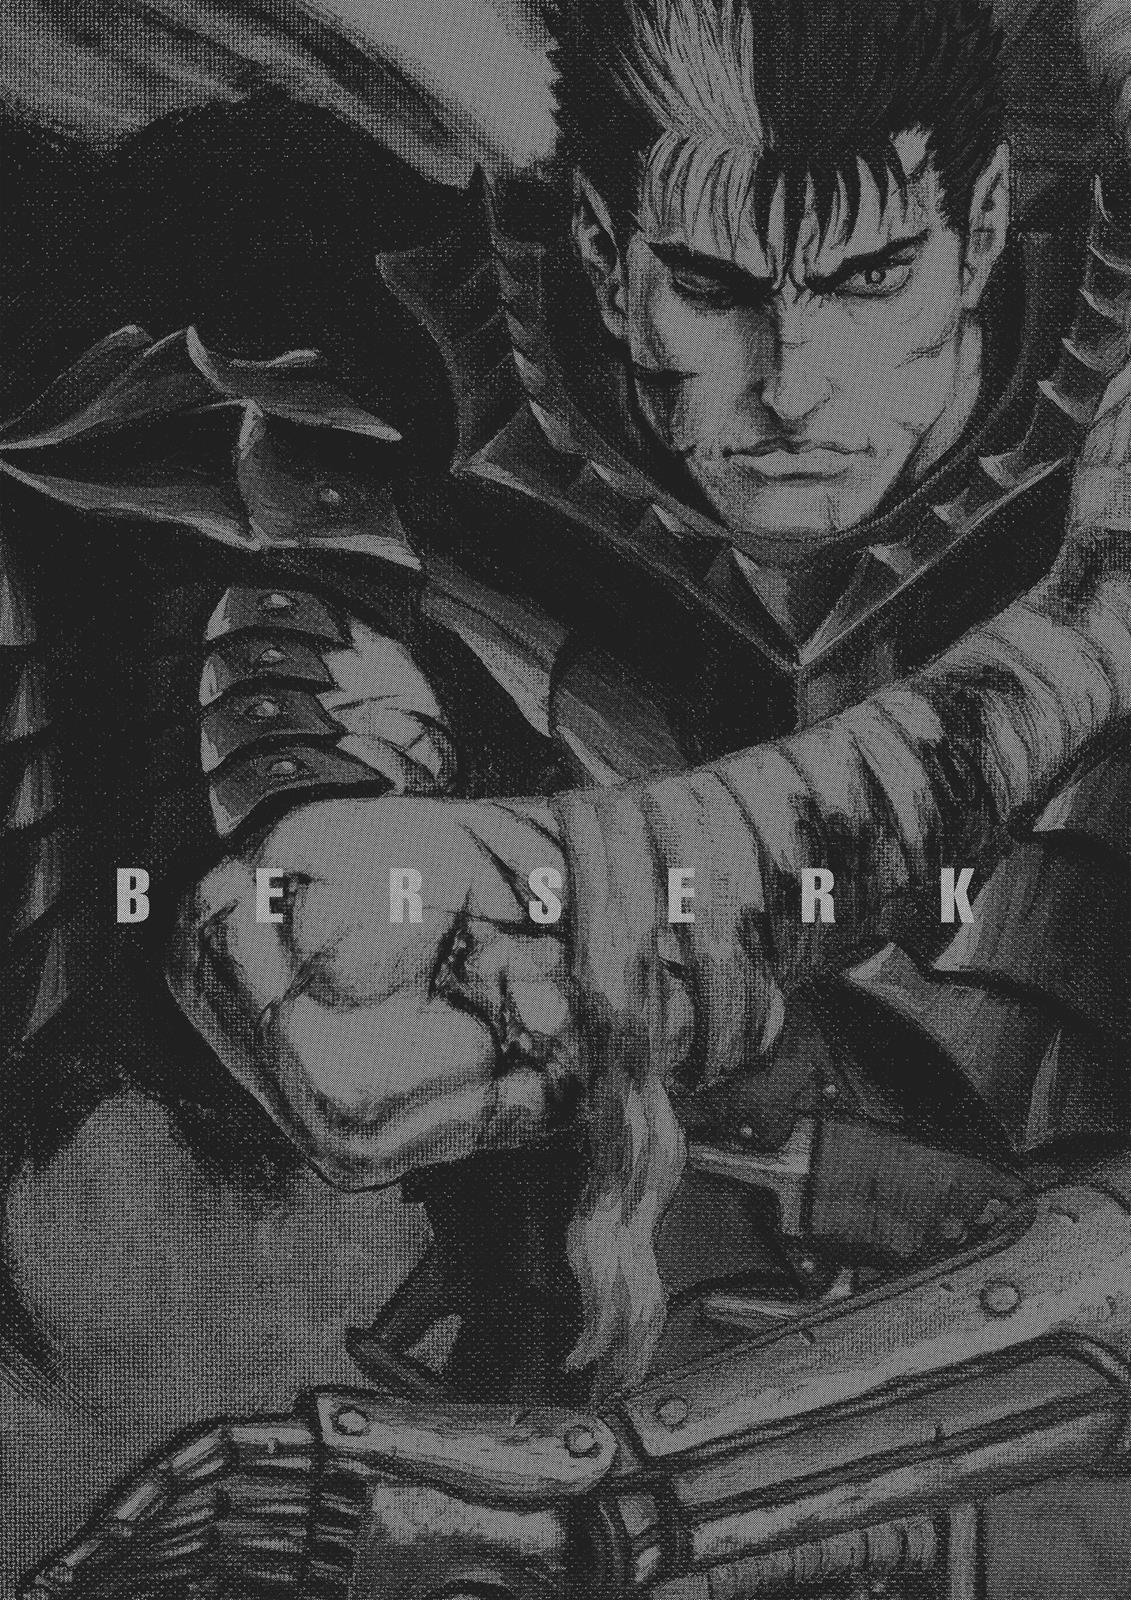 Berserk Manga Chapter 352 image 19